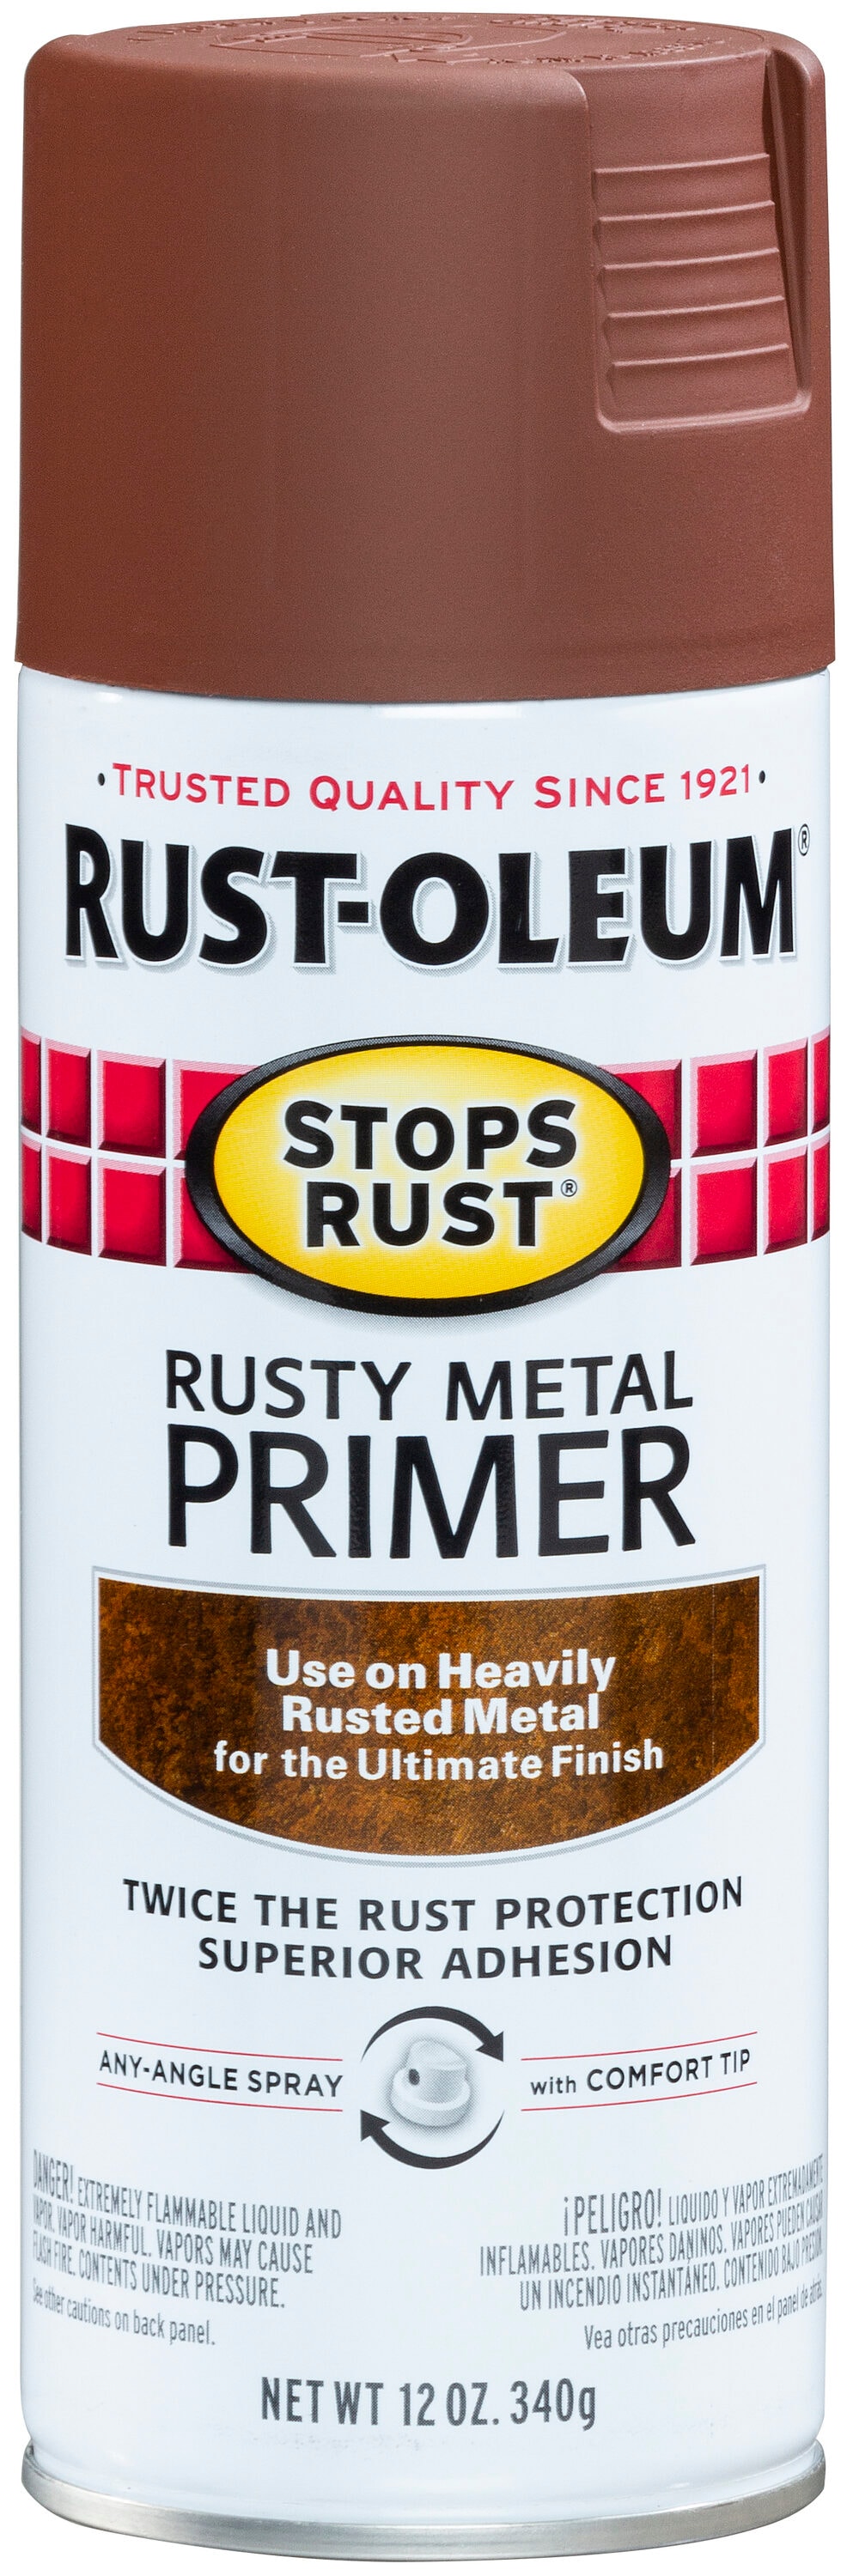 Rust-Oleum® Stops Rust® White Clean Metal Primer, 8 oz - Harris Teeter